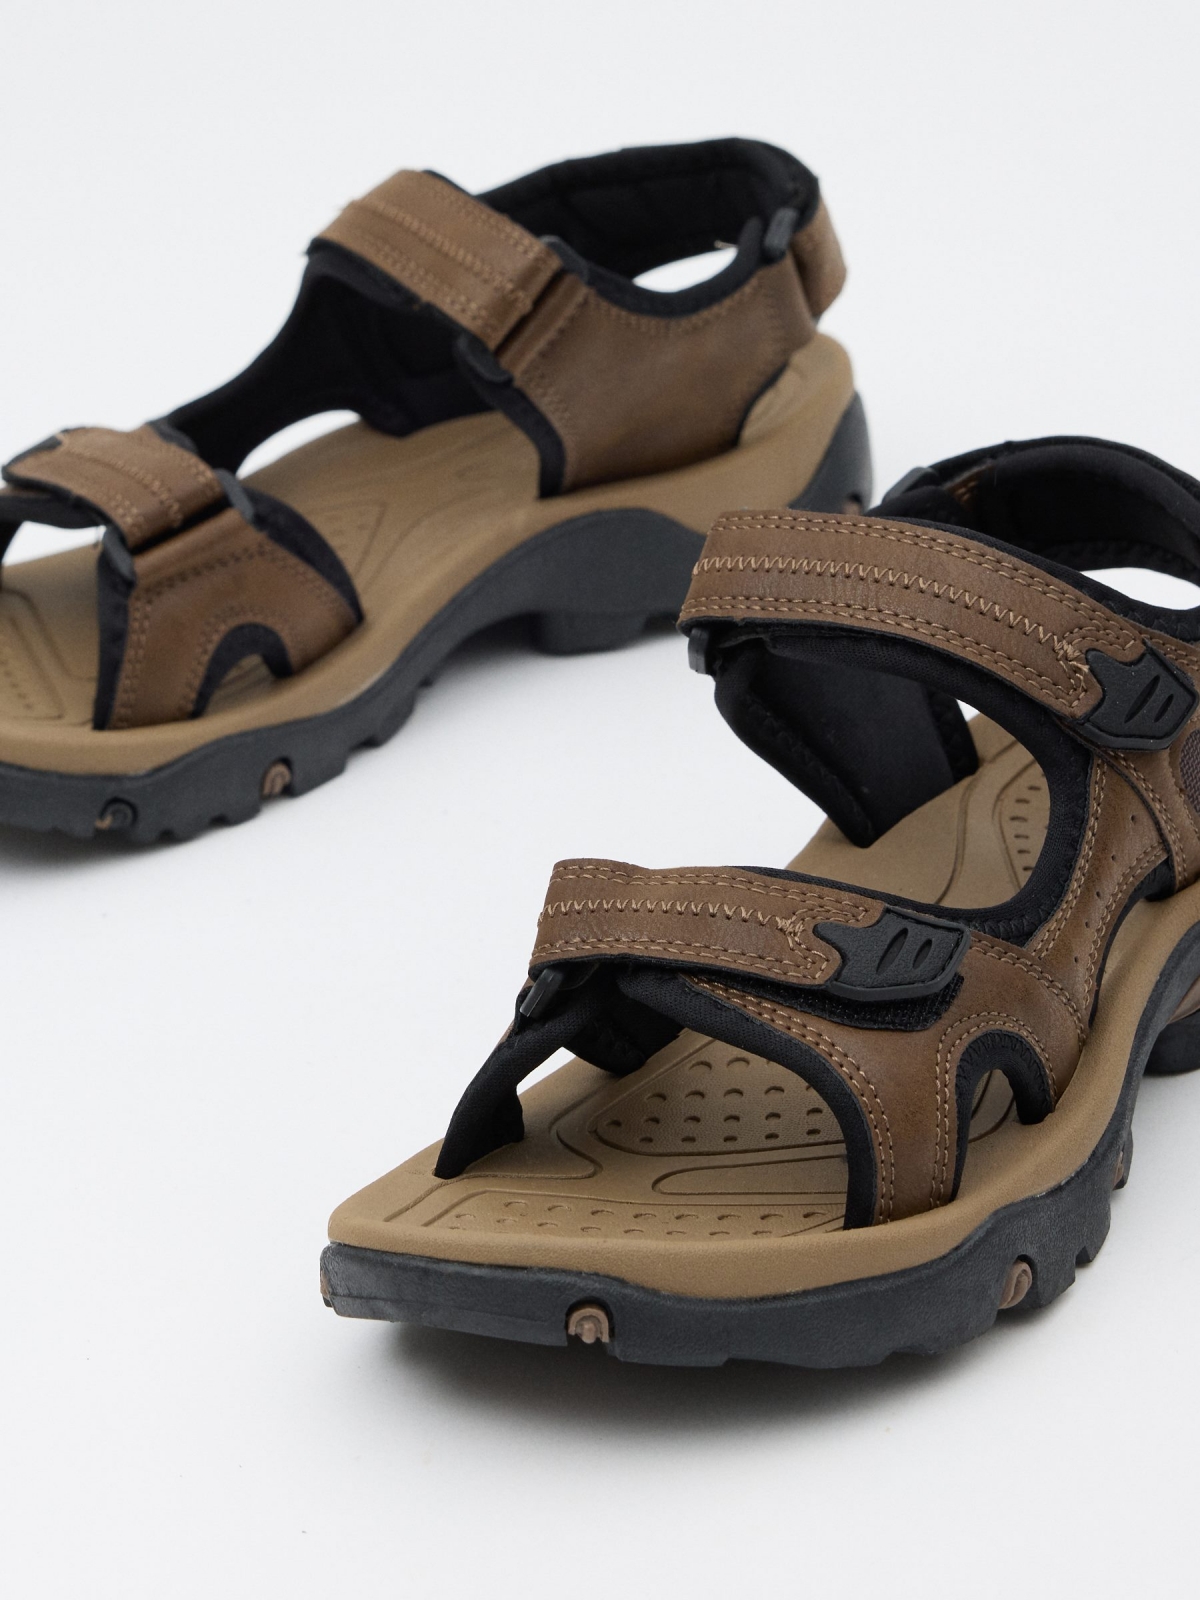 Sandália esportiva marrom efeito de couro marrom escuro vista detalhe